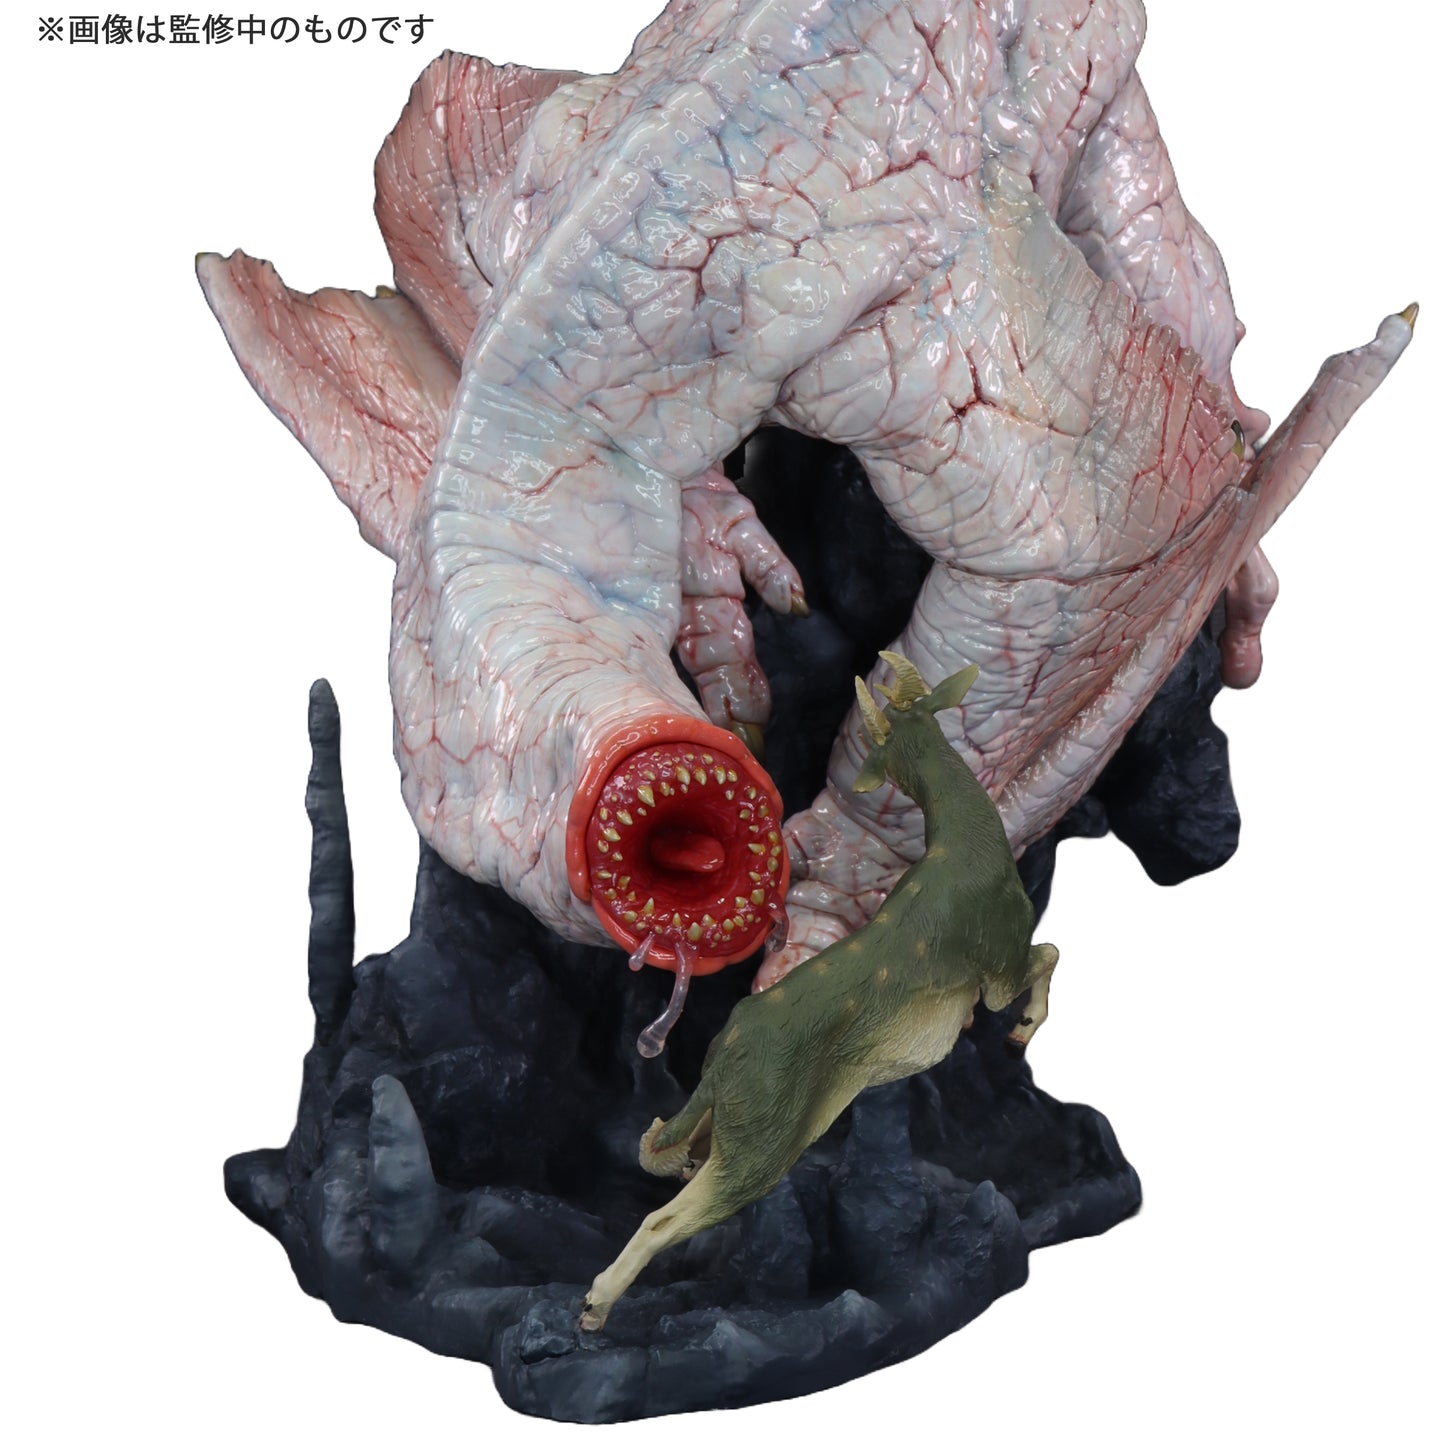 Capcom Figure Builder Creators Model "Monster Hunter" Strange Wyvern Khezu